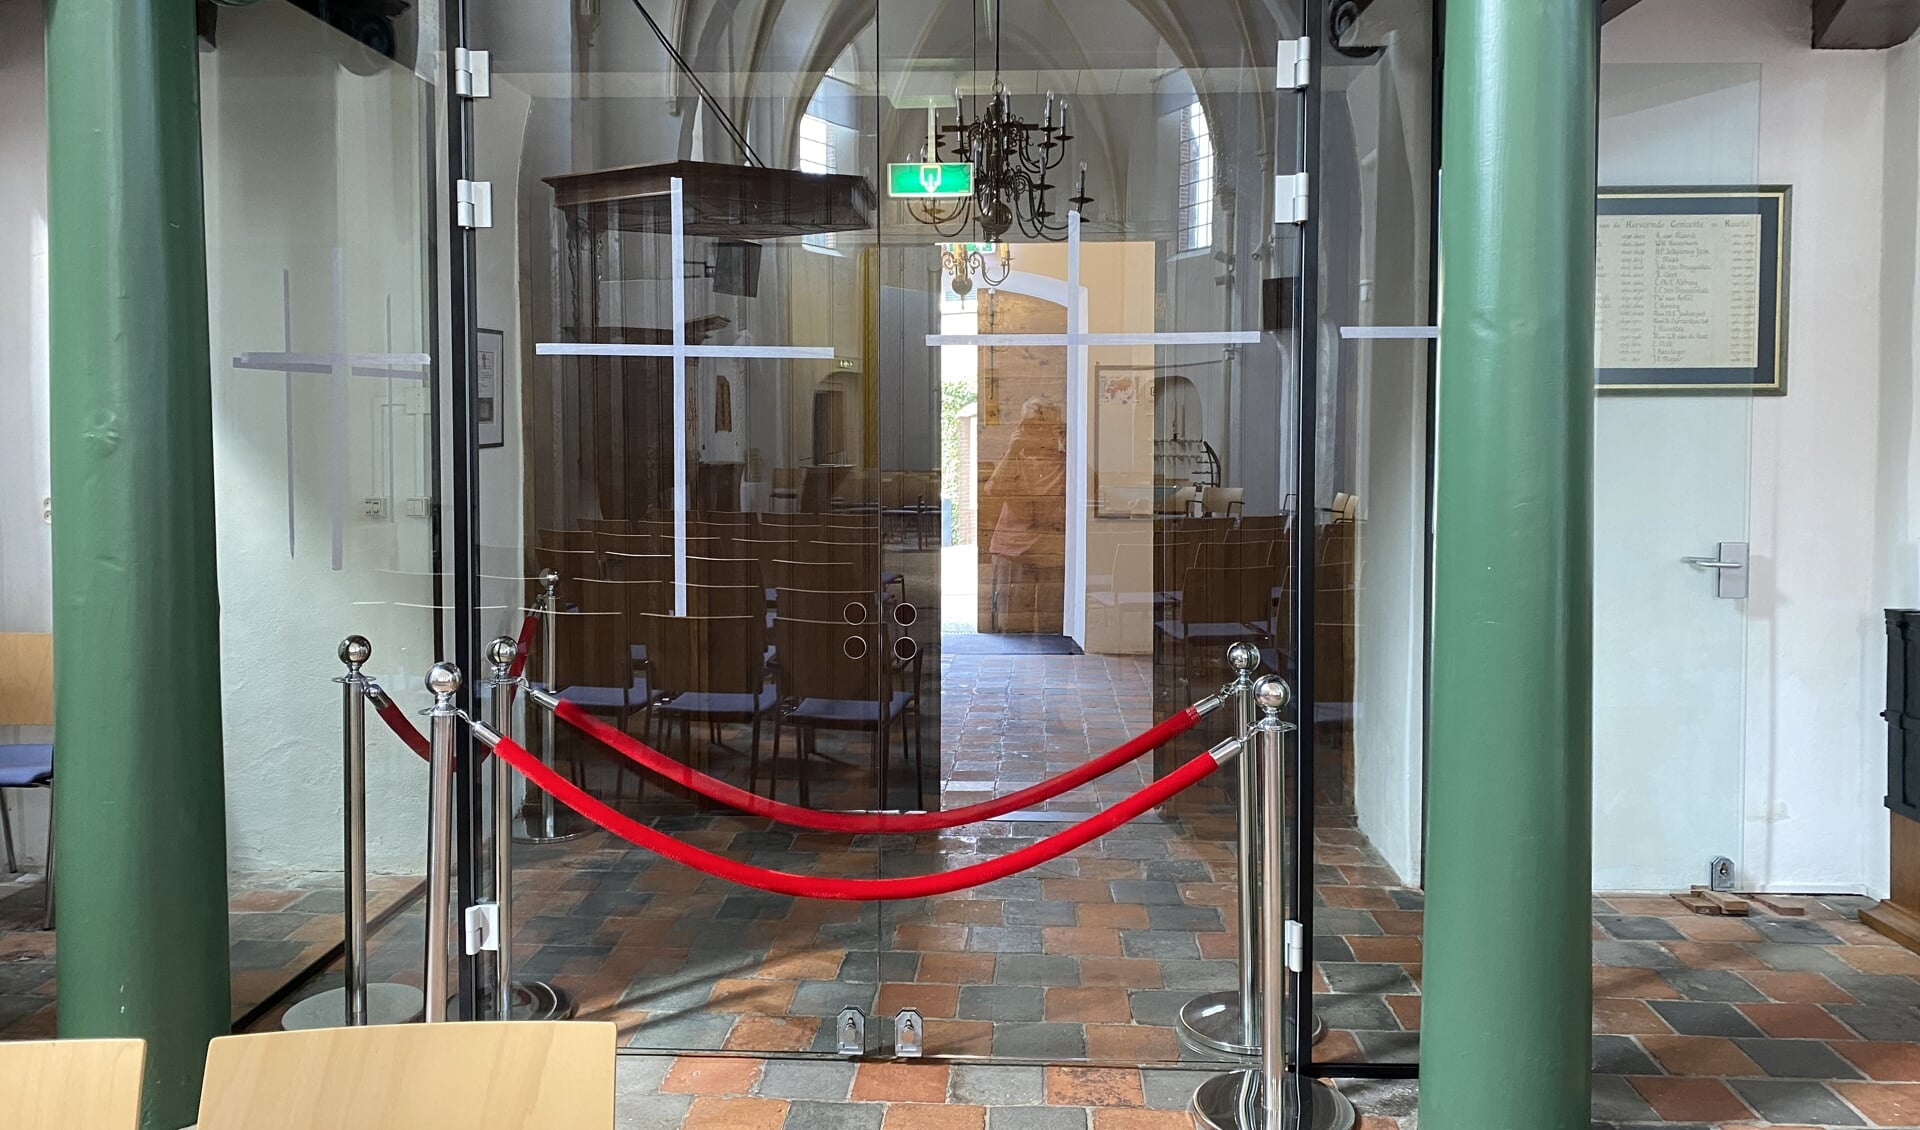 De nieuwe glazen entree van de Dorpskerk stimuleert om de deuren nog vaker open te zetten. Foto's  PR . 